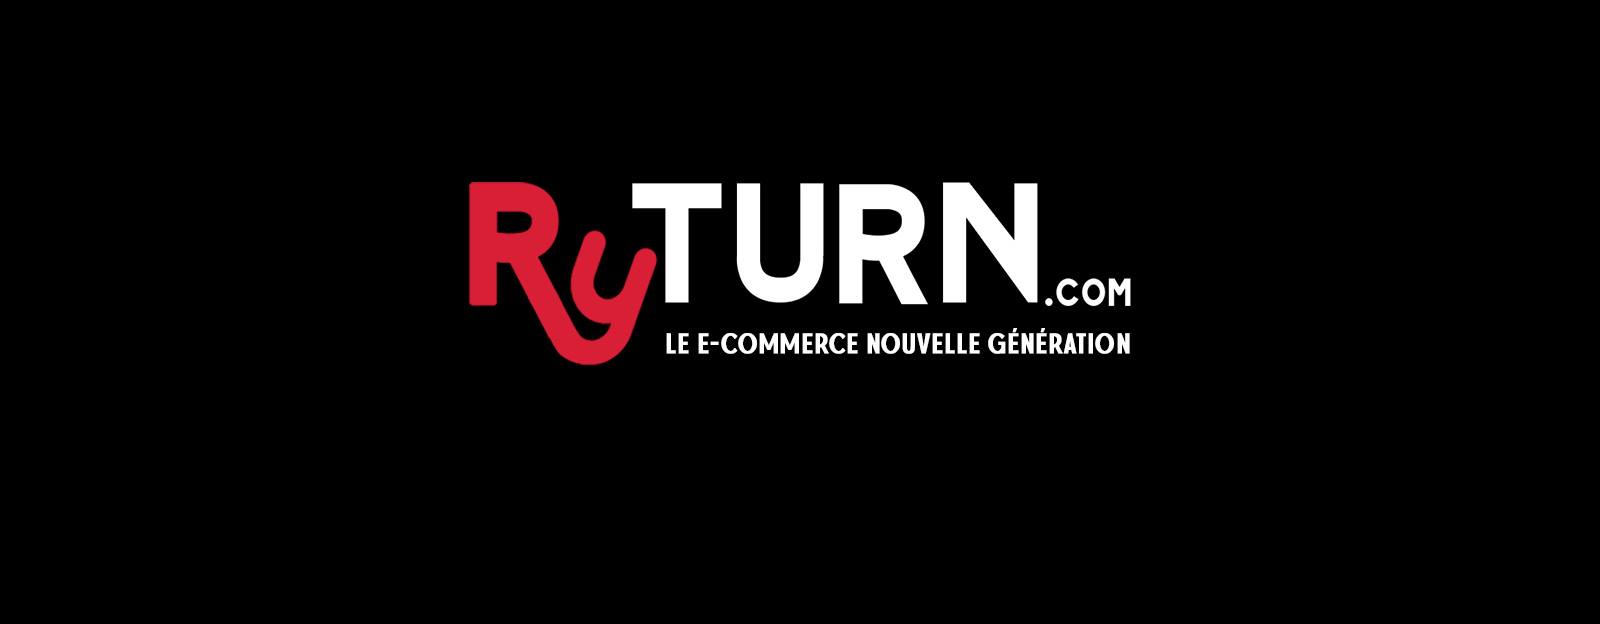 Ryturn annonce l’ouverture d’une Marketplace de nouvelle génération